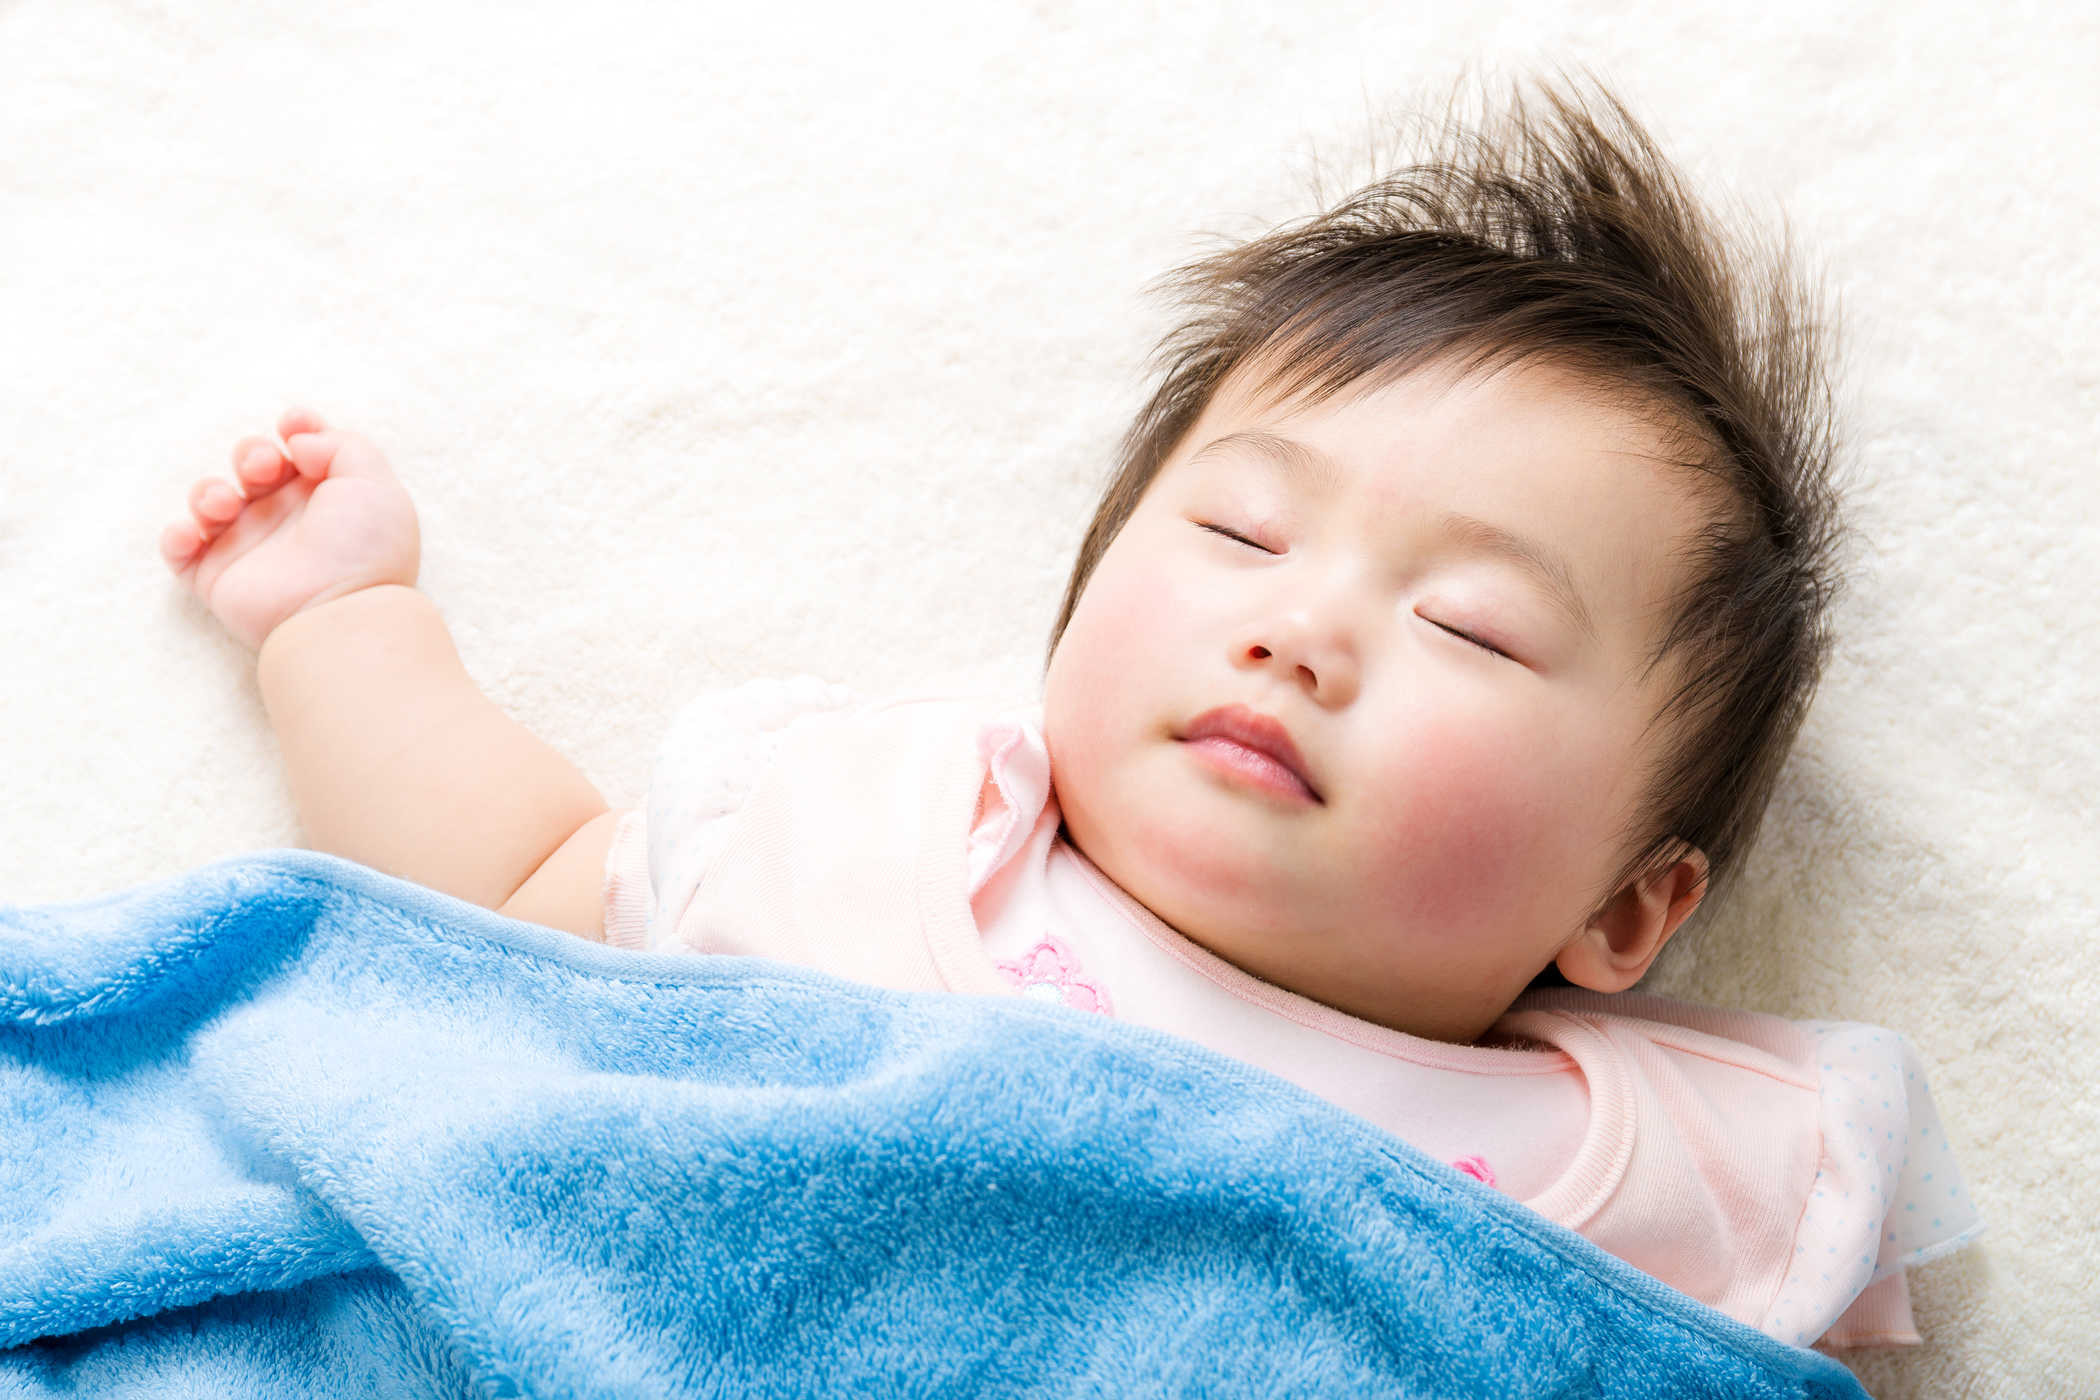   Bố mẹ nên cho trẻ ngủ đủ khi bị sốt  